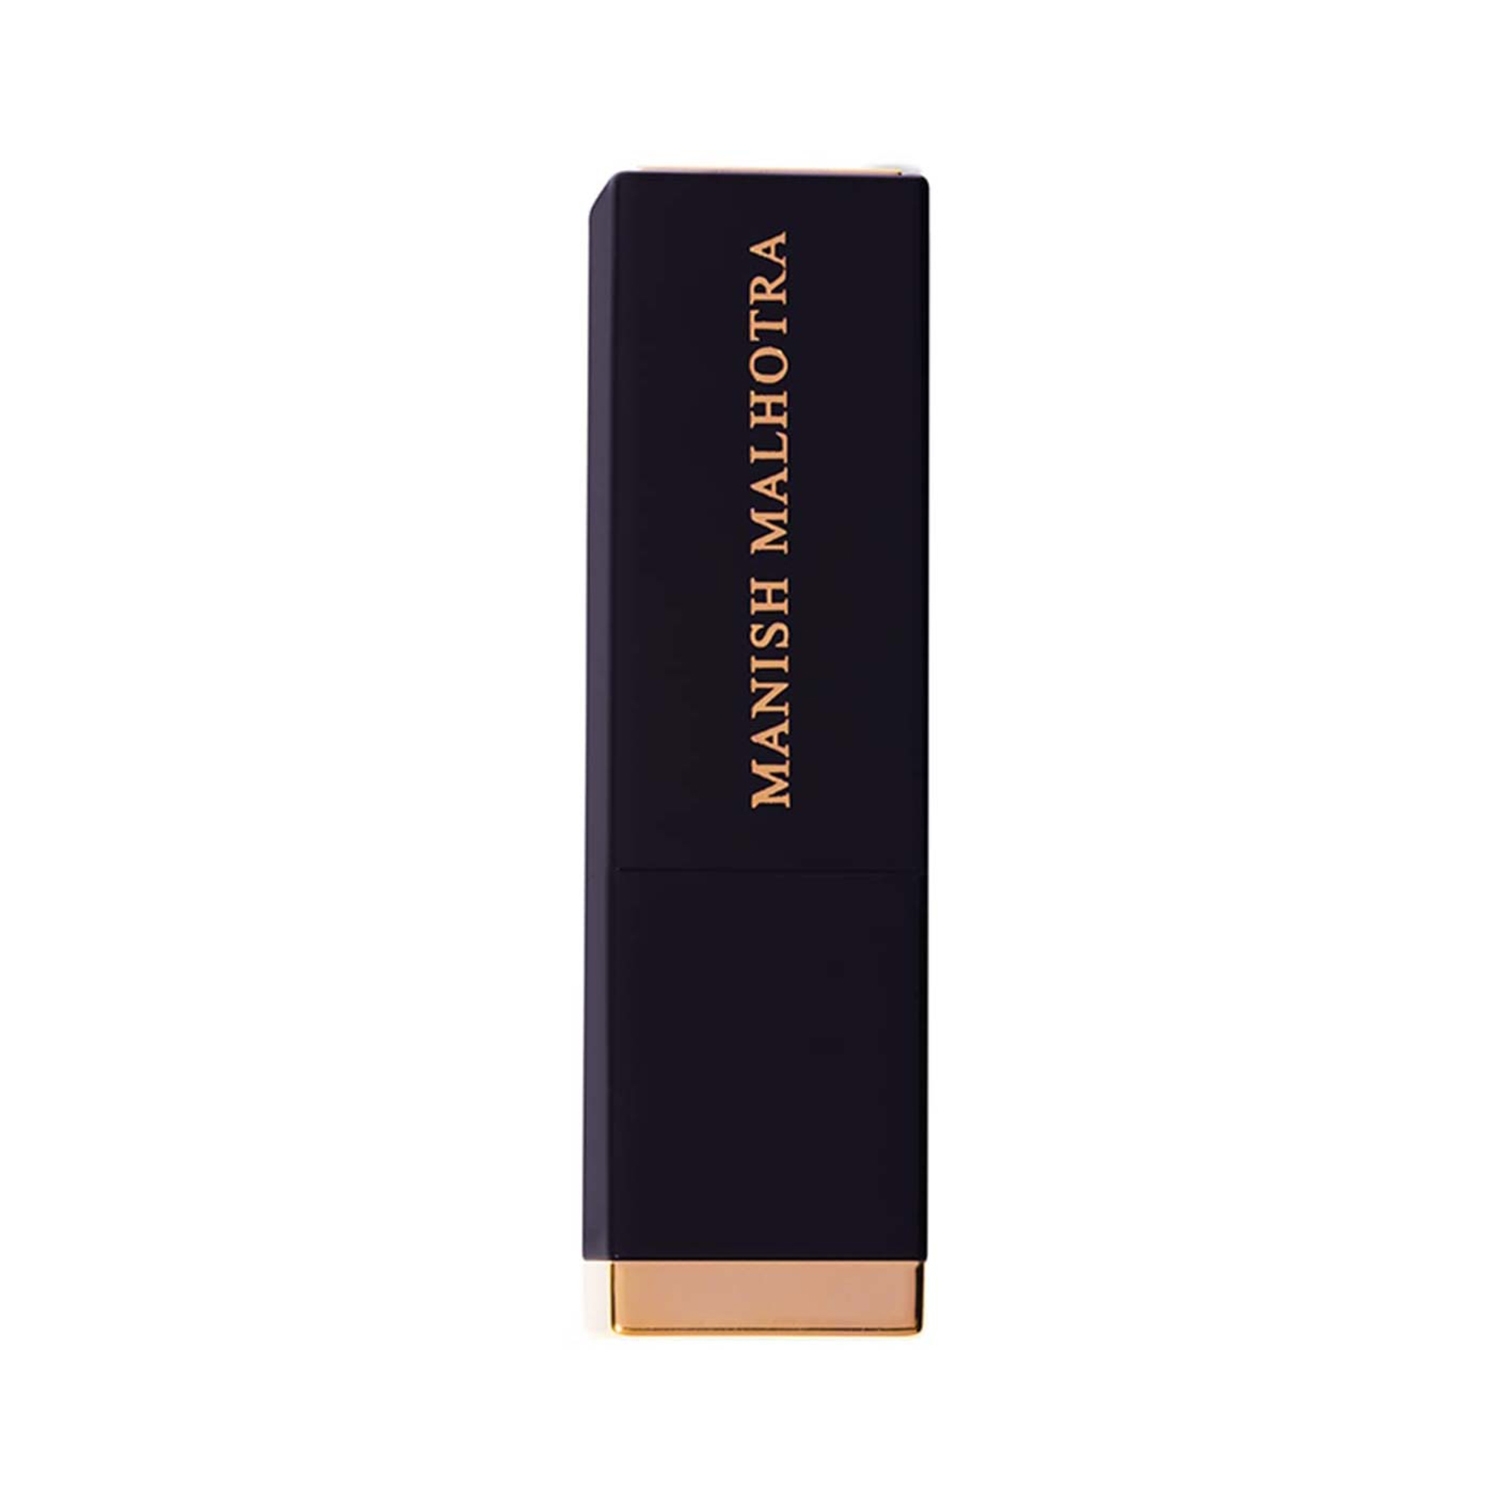 MyGlamm | MyGlamm Manish Malhotra Hi-Shine Lipstick - French Praline (4g)